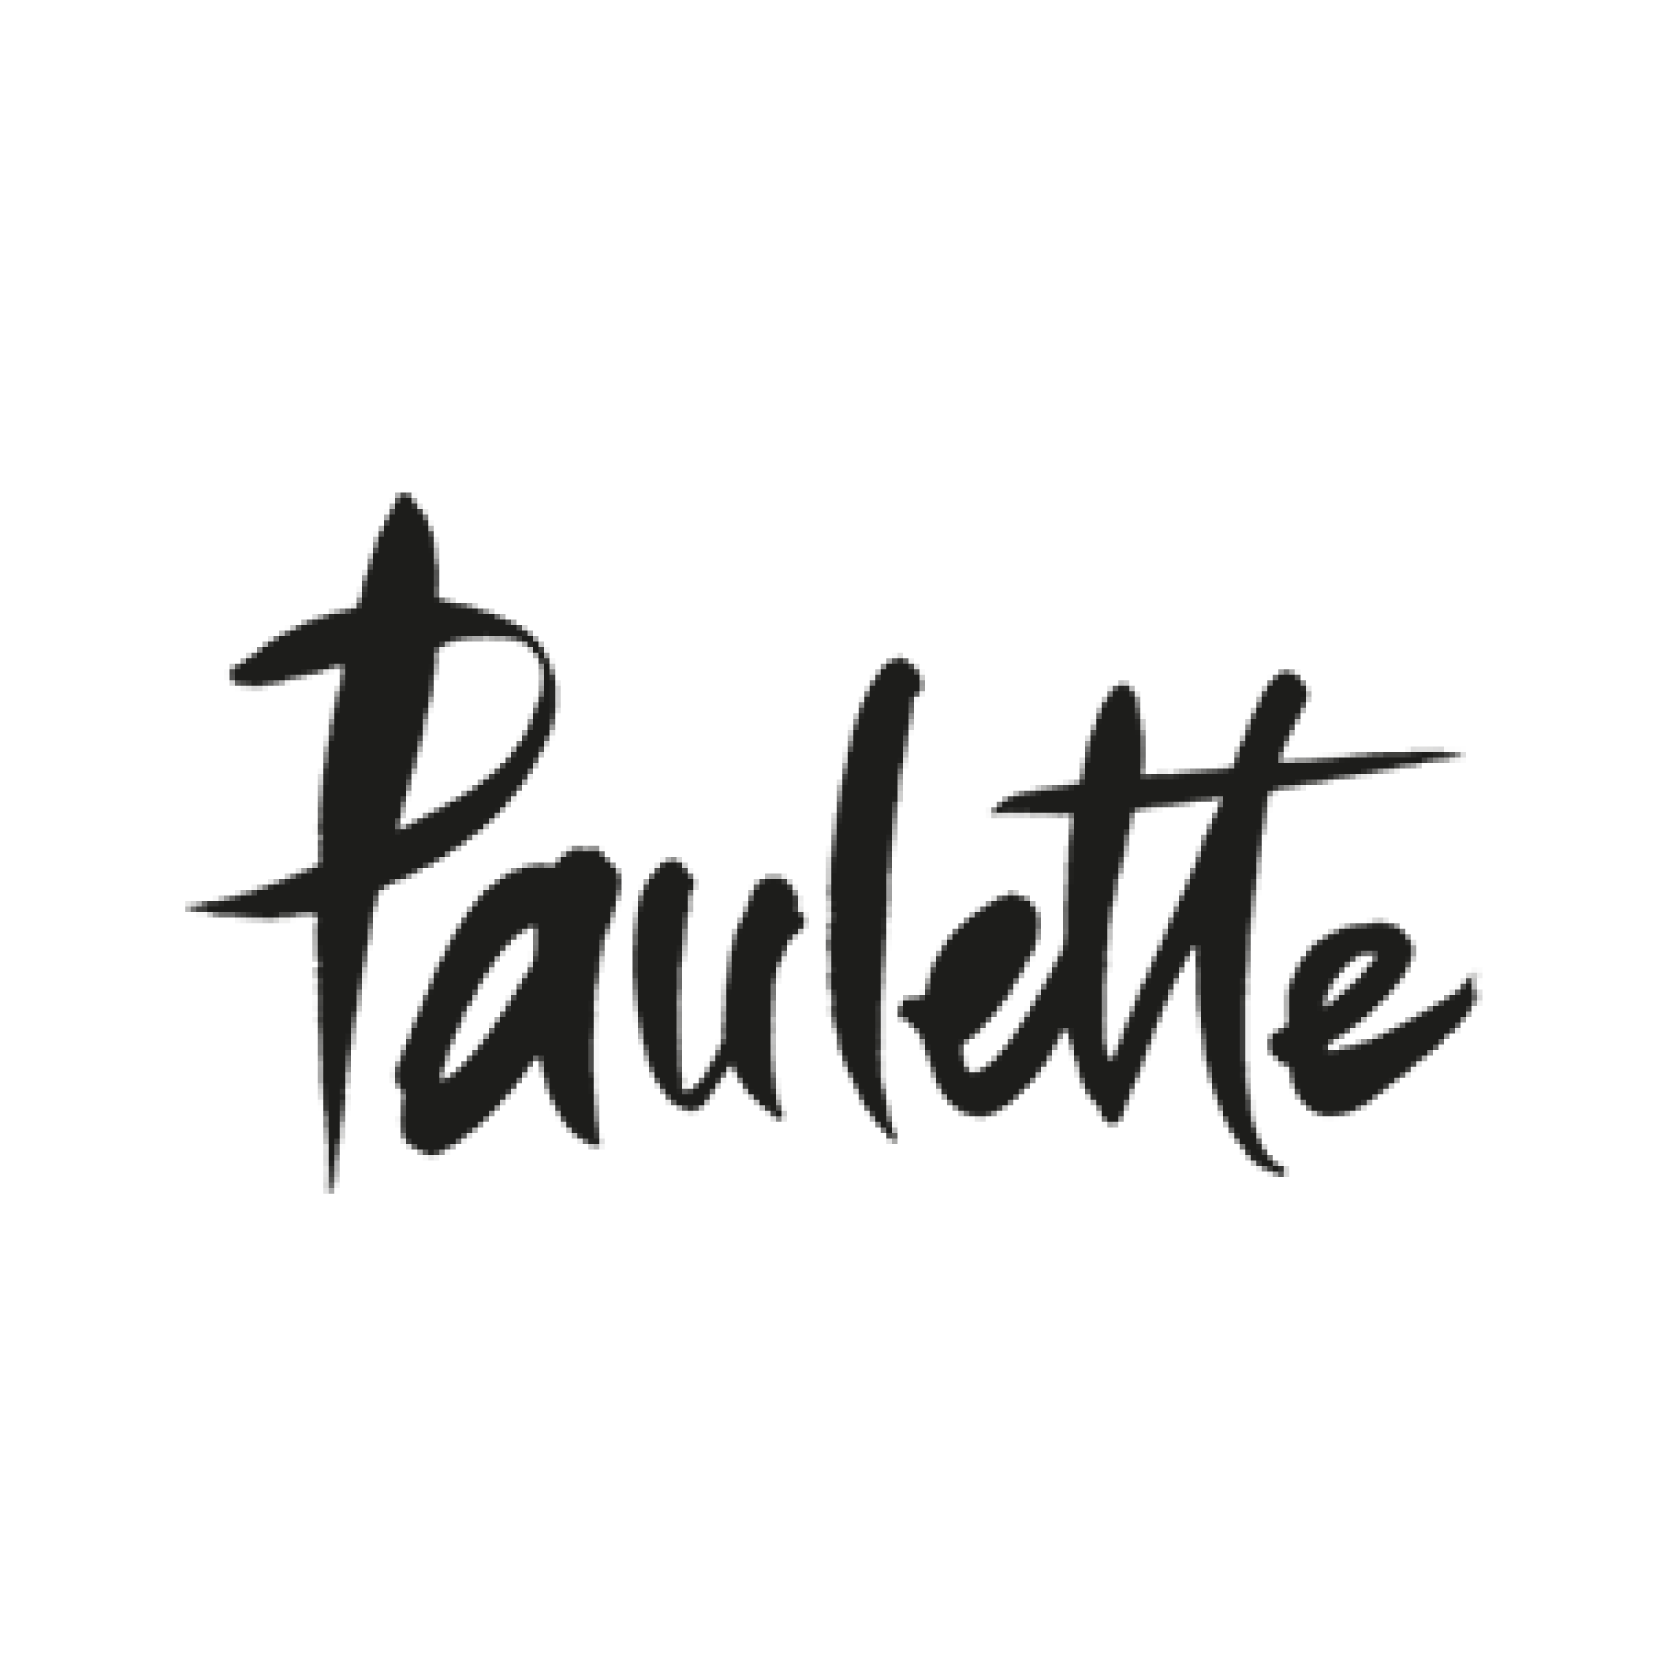 //simonetta-paris.com/wp-content/uploads/2017/02/logo_paulette.png